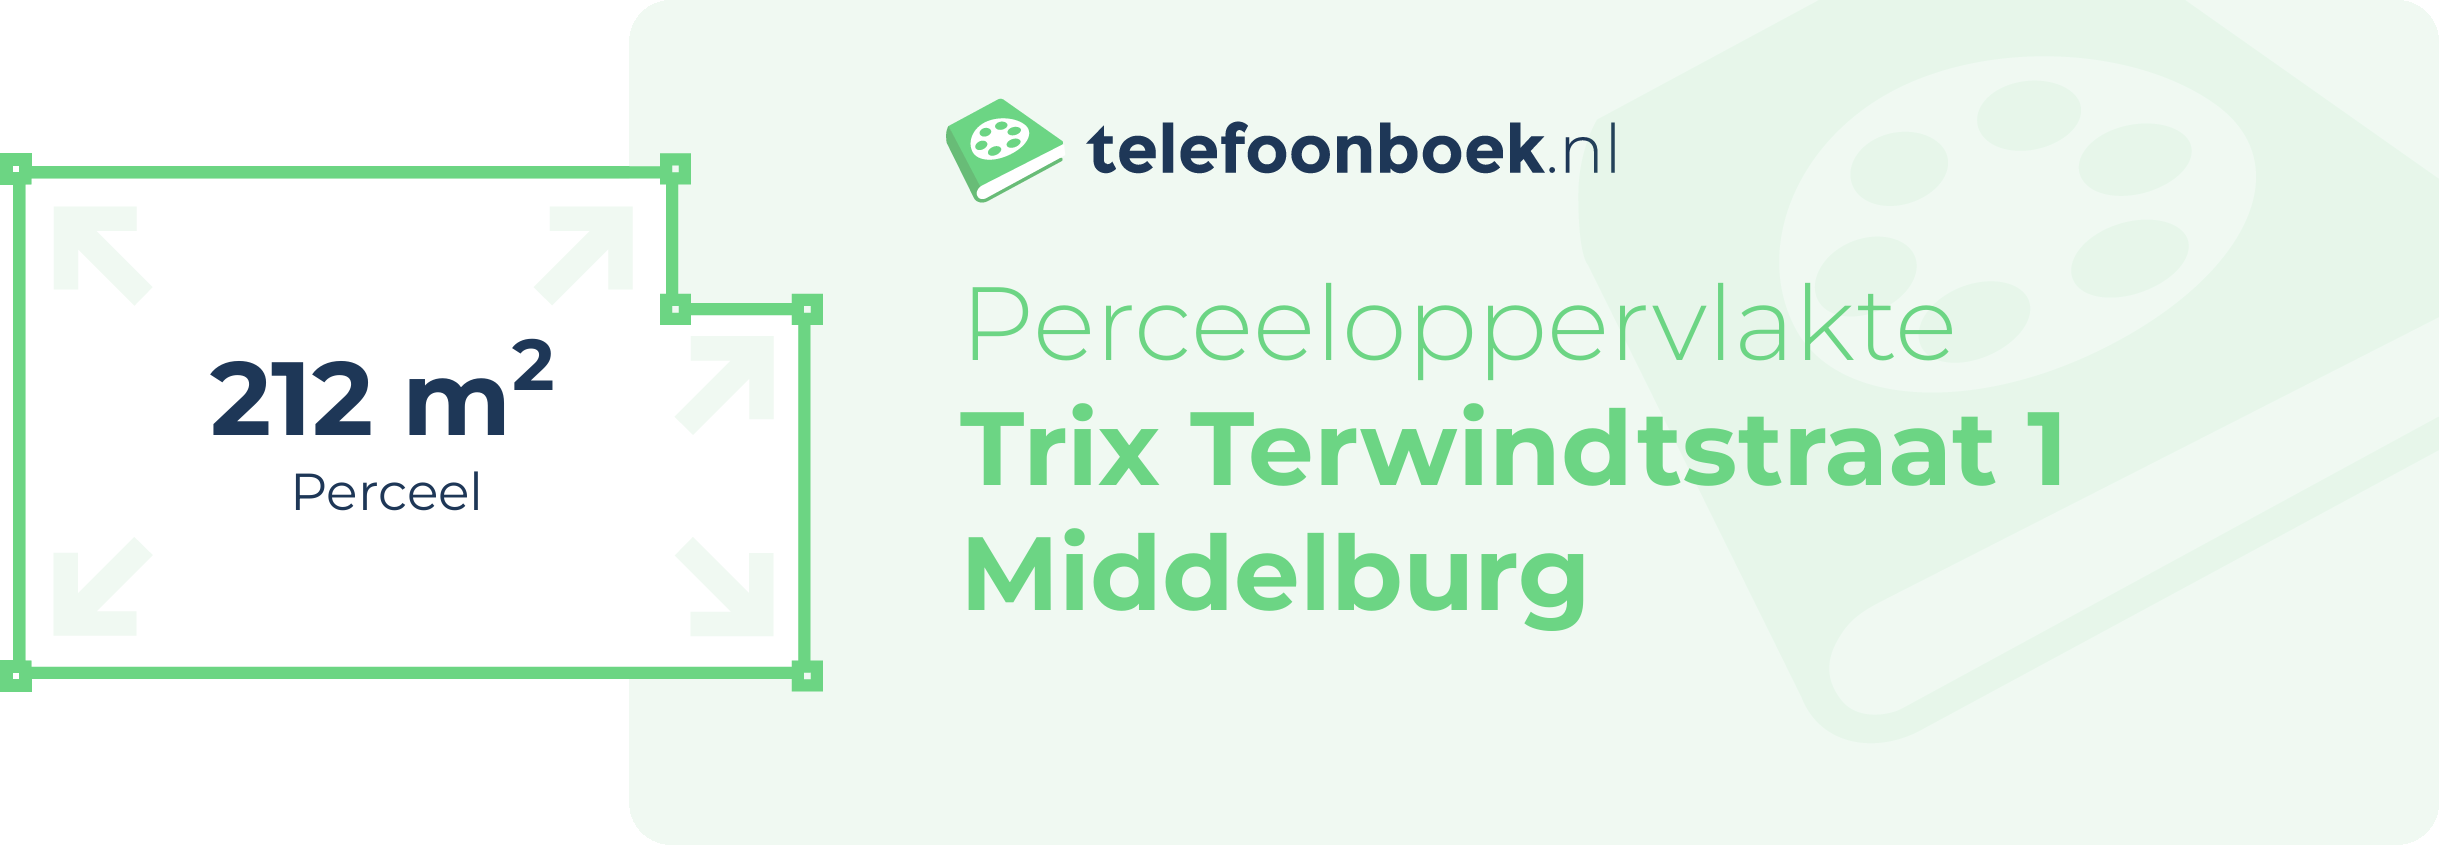 Perceeloppervlakte Trix Terwindtstraat 1 Middelburg